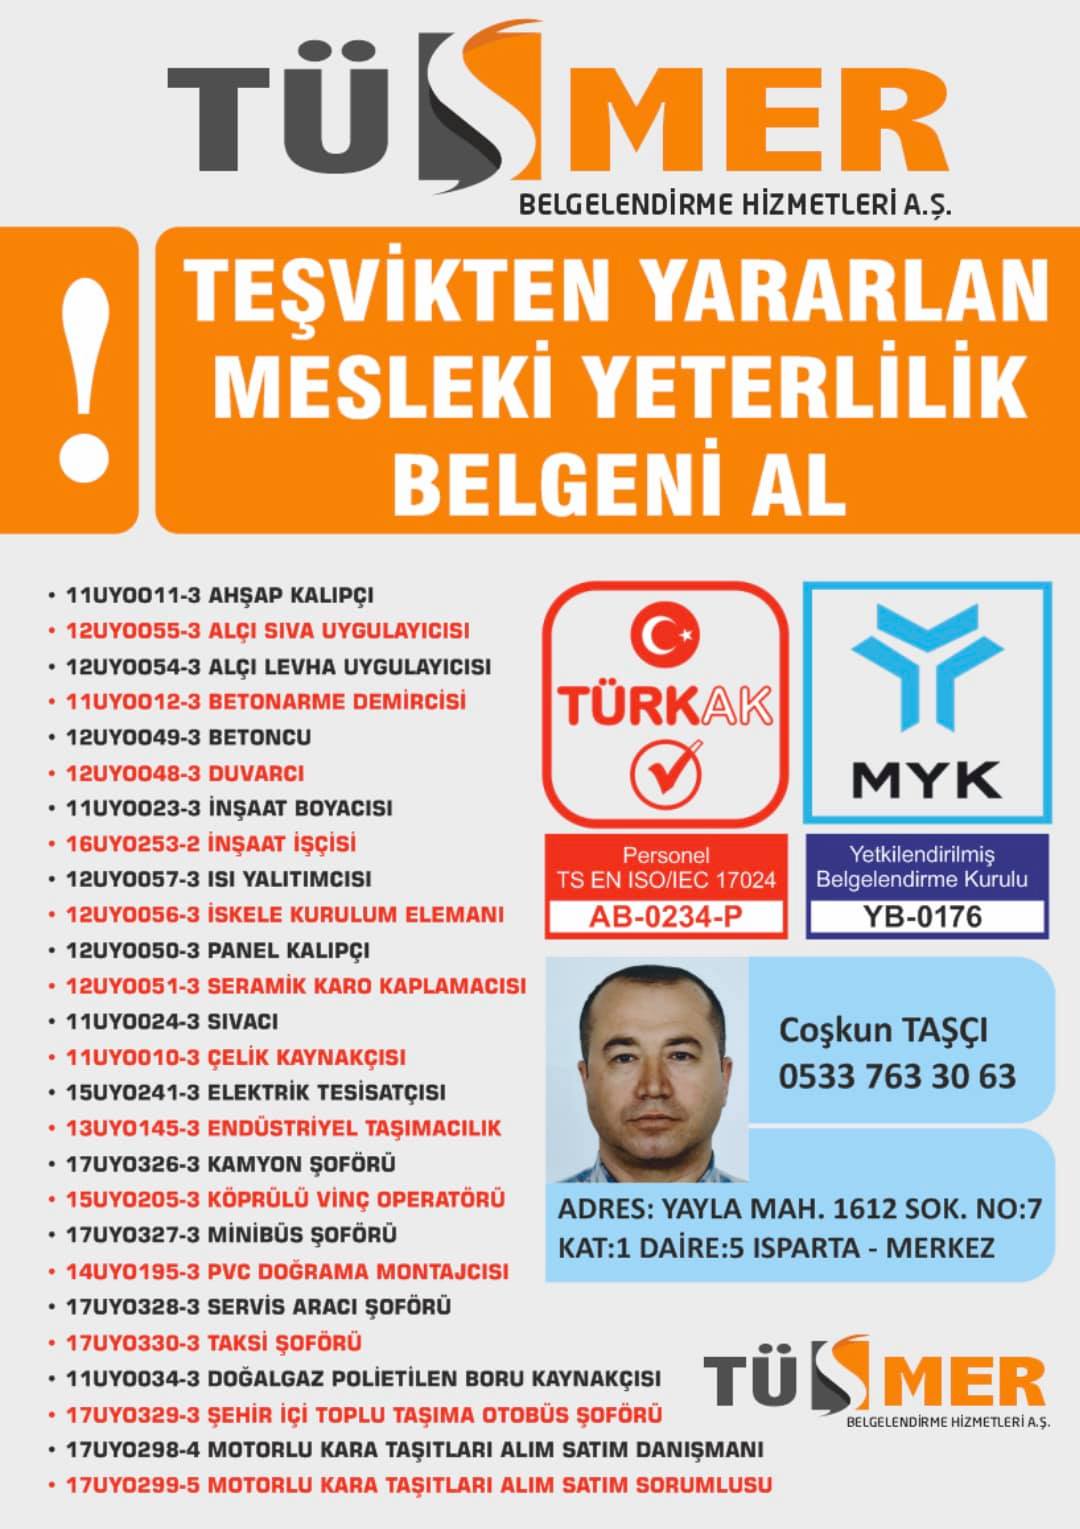 MYK MESLEKİ YETERLİLİK BELGESİ Mamak Ankara